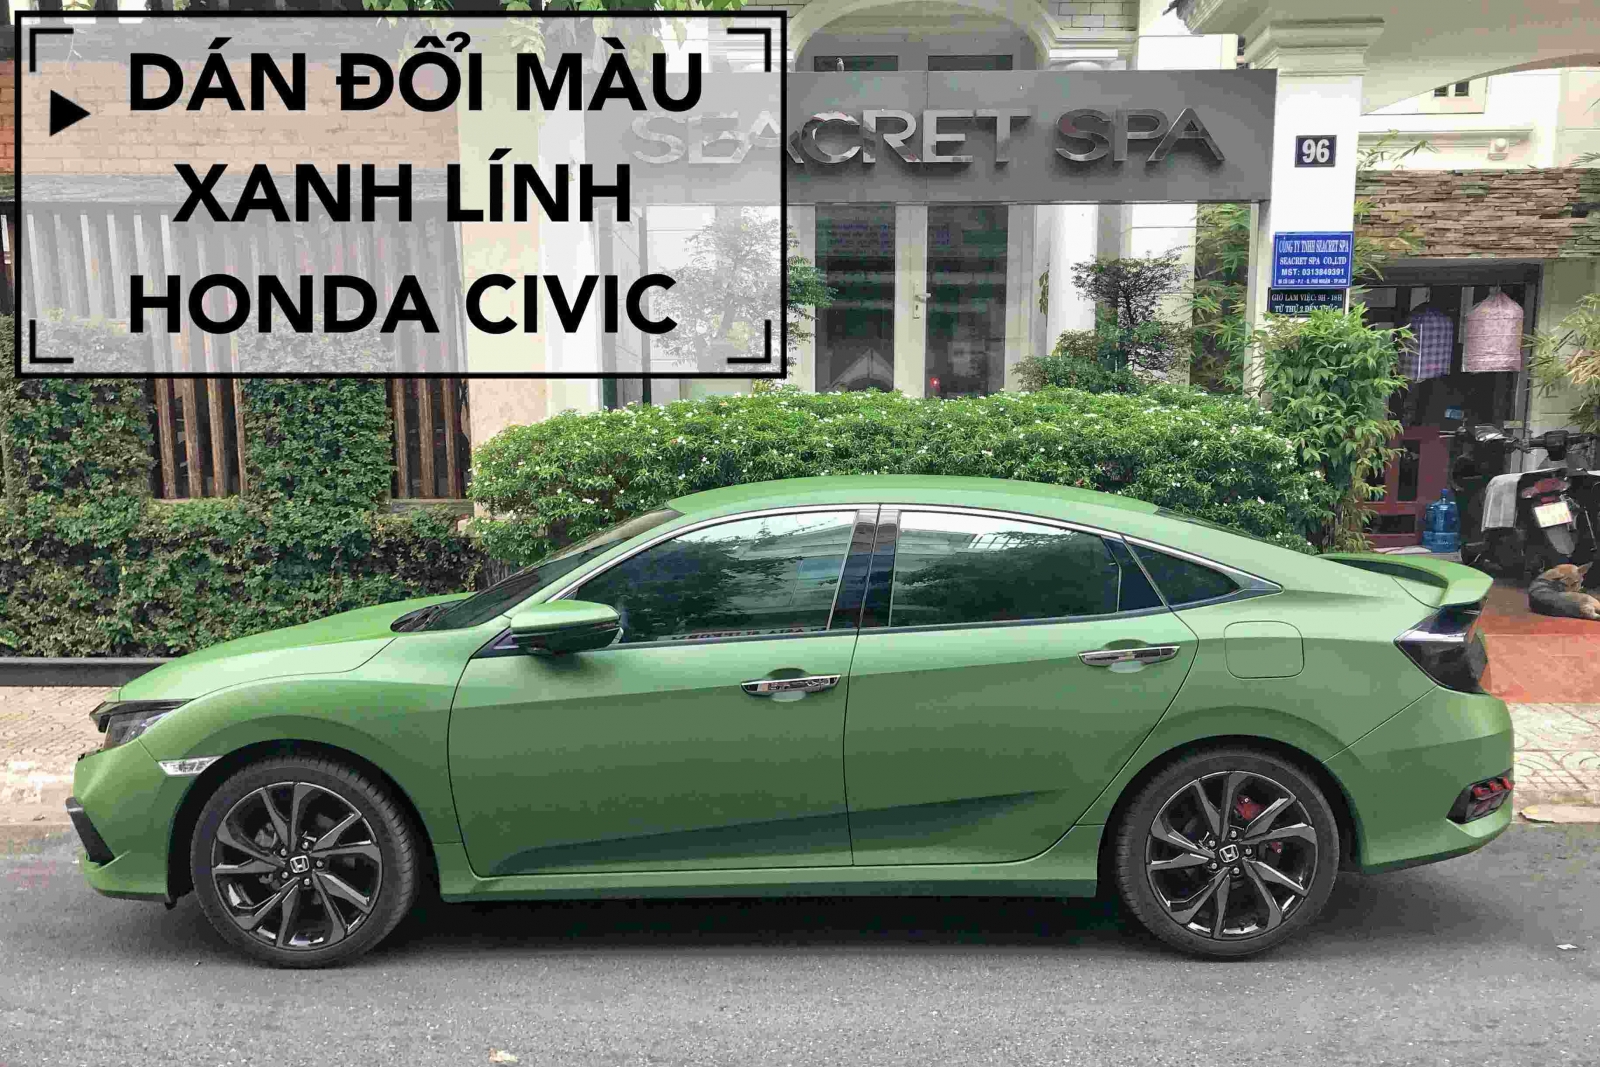 Dán decal wrap đổi màu xanh lính xe ô tô Honda Civic 2019 cực ngầu